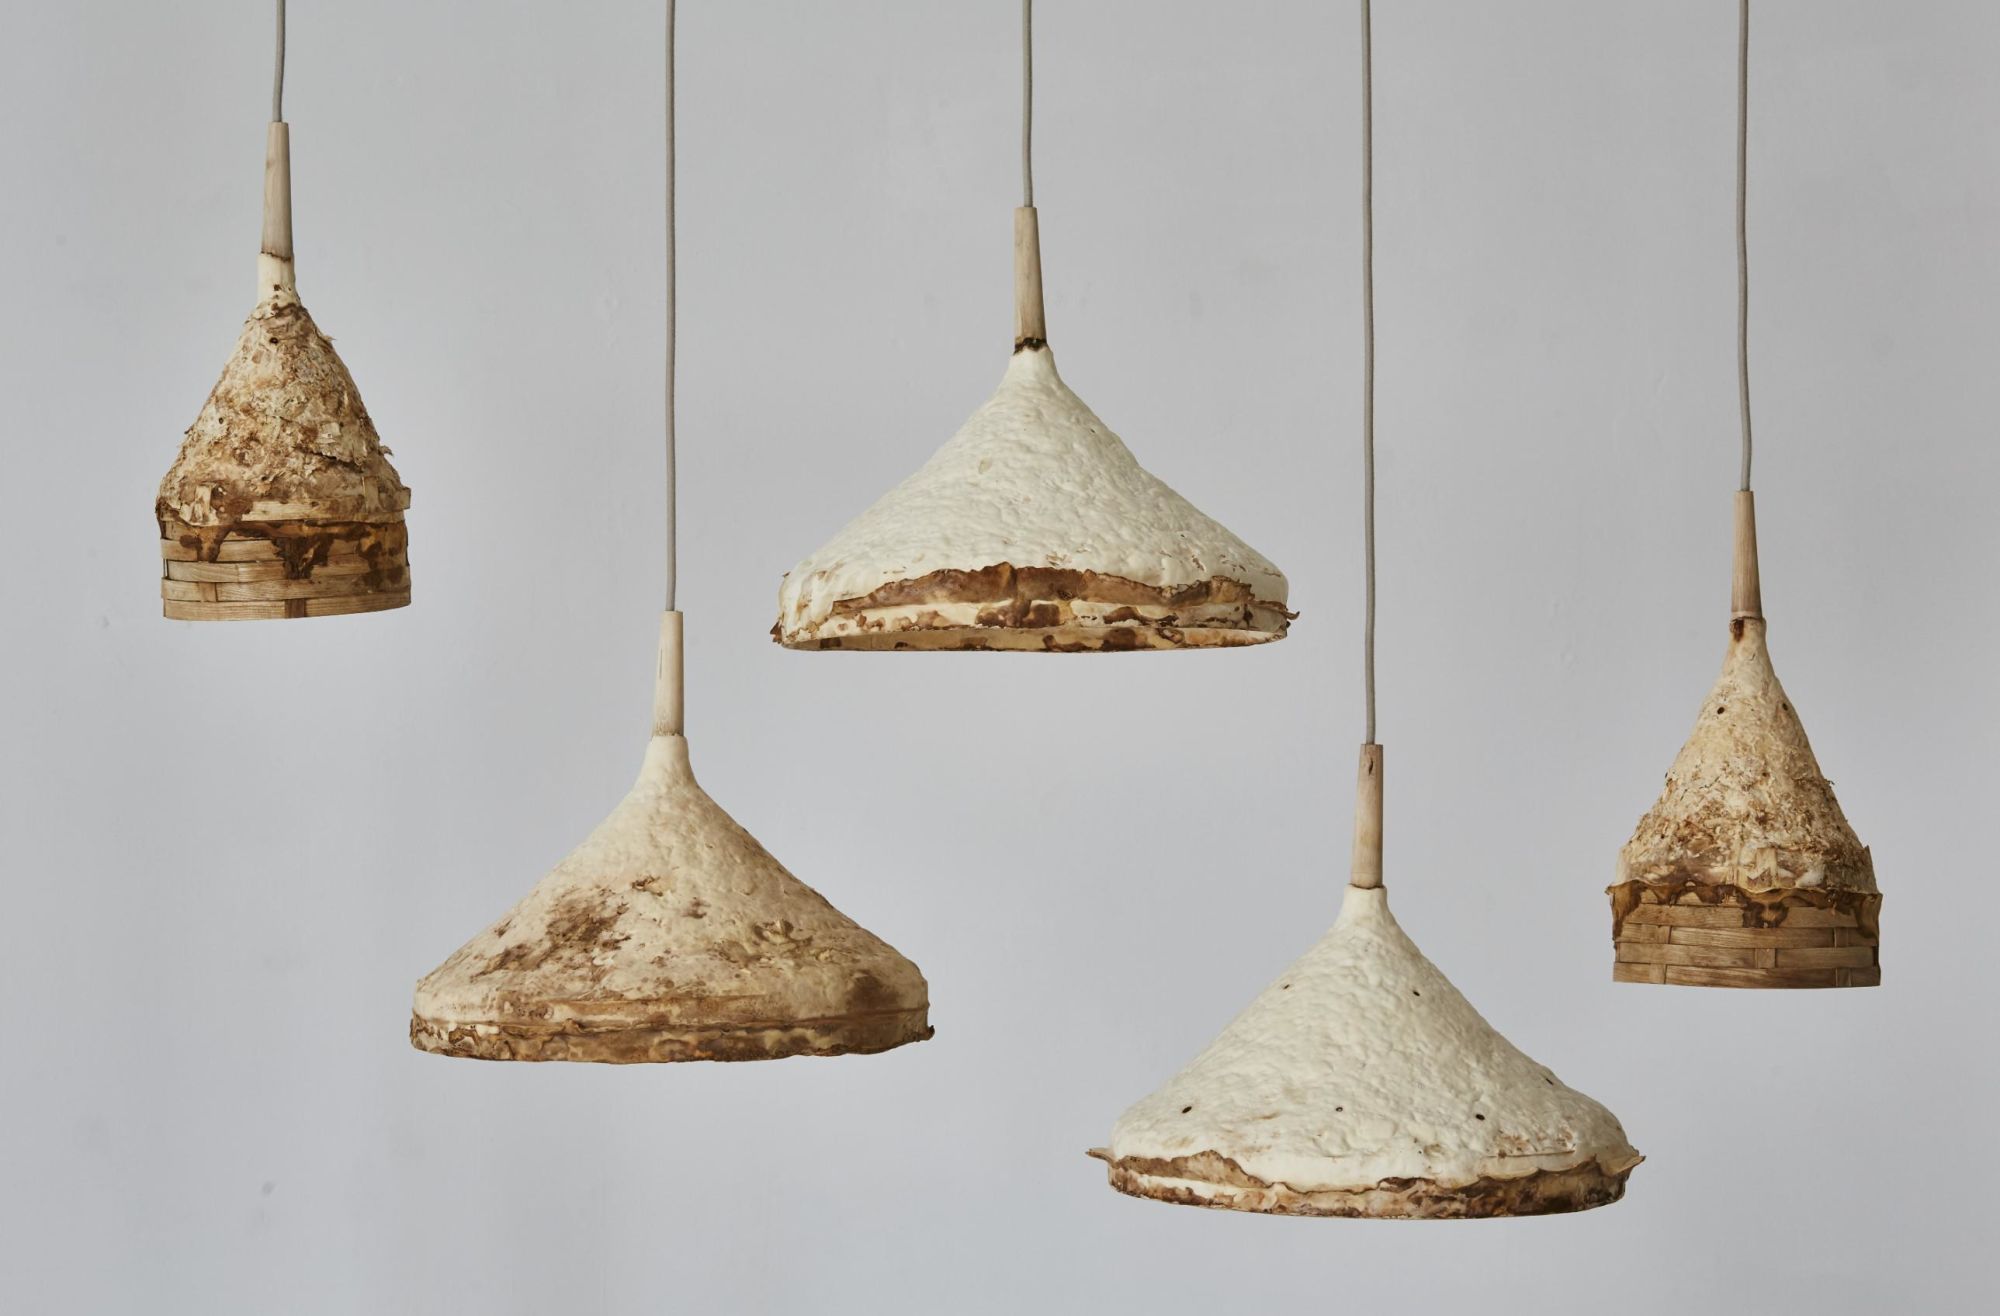 mushrooms exhibition art design lamp